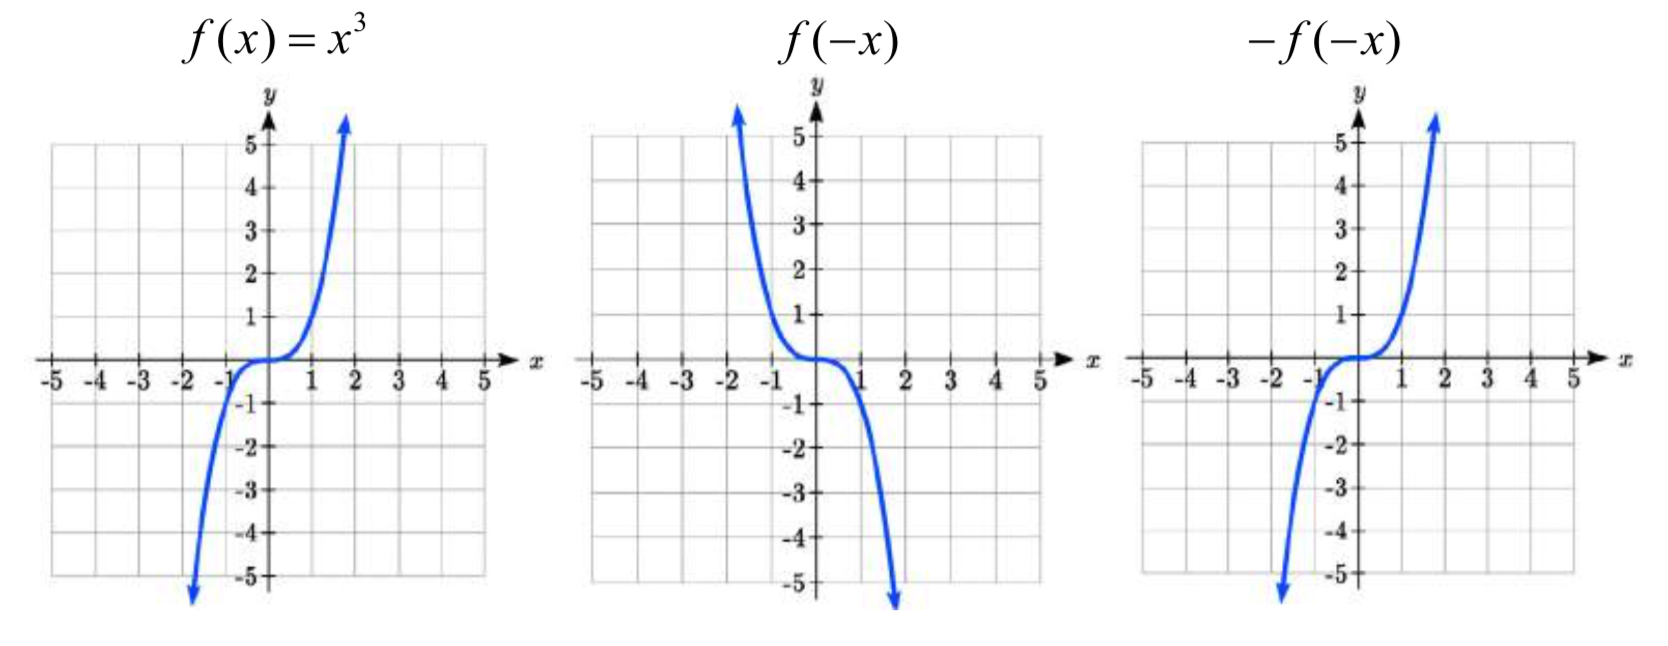 Un giro vertical y horizontal de una gráfica cúbica estándar, con el resultado pareciendo una gráfica cúbica estándar Una gráfica cúbica estándar, aumentando cóncava hacia abajo hasta el origen, luego aumentando cóncava hacia arriba Un giro horizontal de una gráfica cúbica estándar, disminuyendo cóncava hacia arriba y luego disminuyendo cóncava hacia abajo